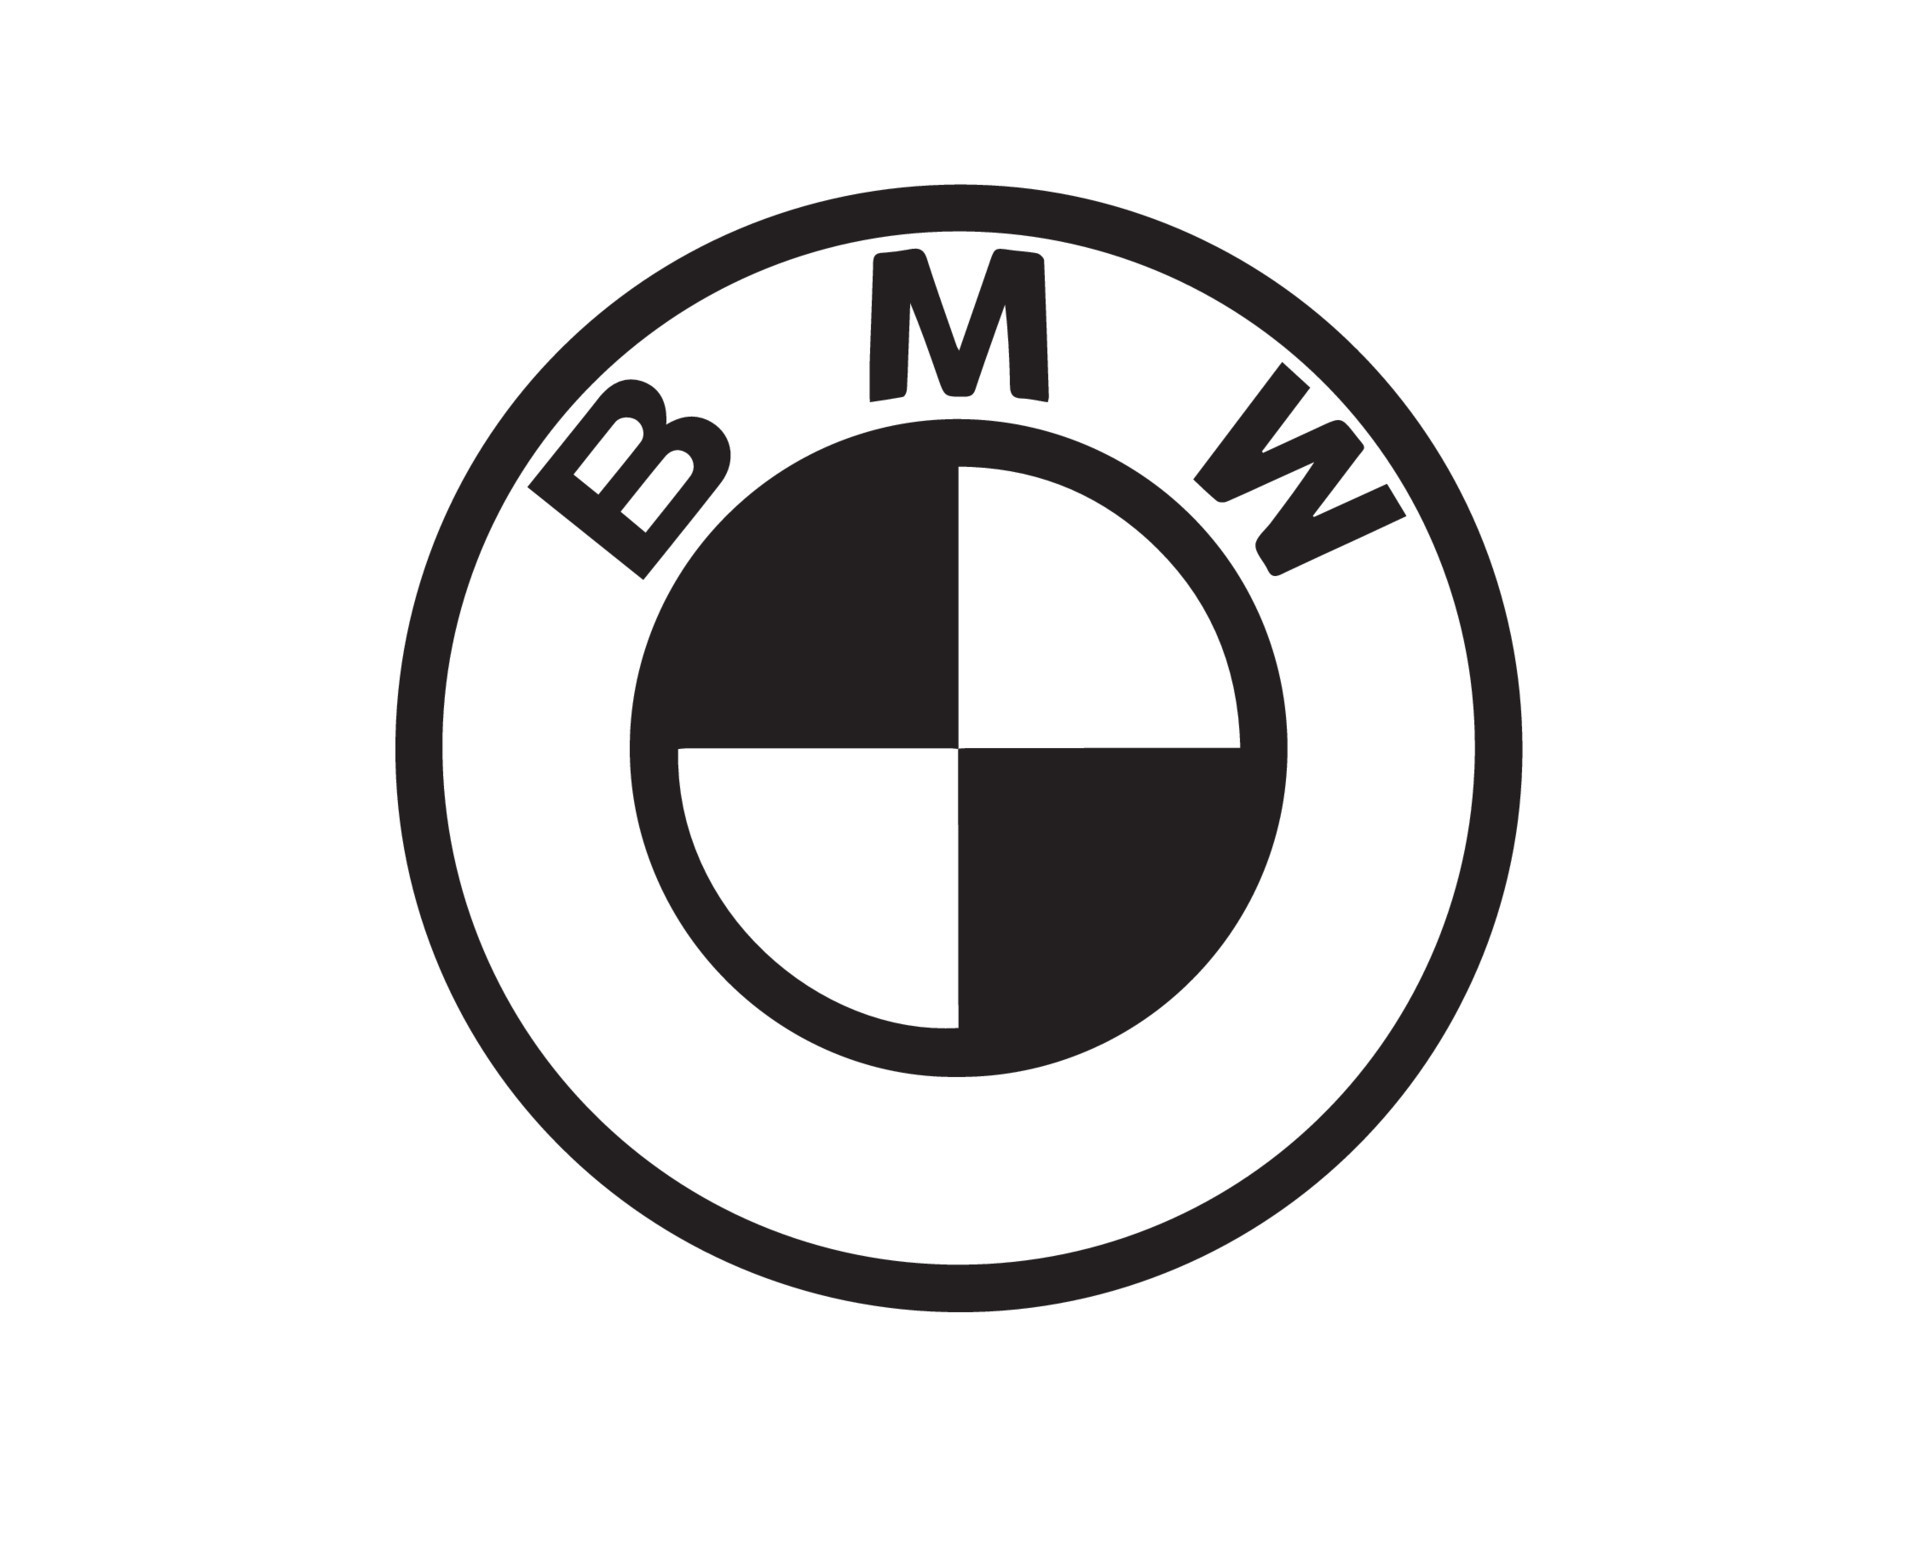 BMW marca logo simbolo nero design Germania auto automobile vettore  illustrazione 20500224 Arte vettoriale a Vecteezy